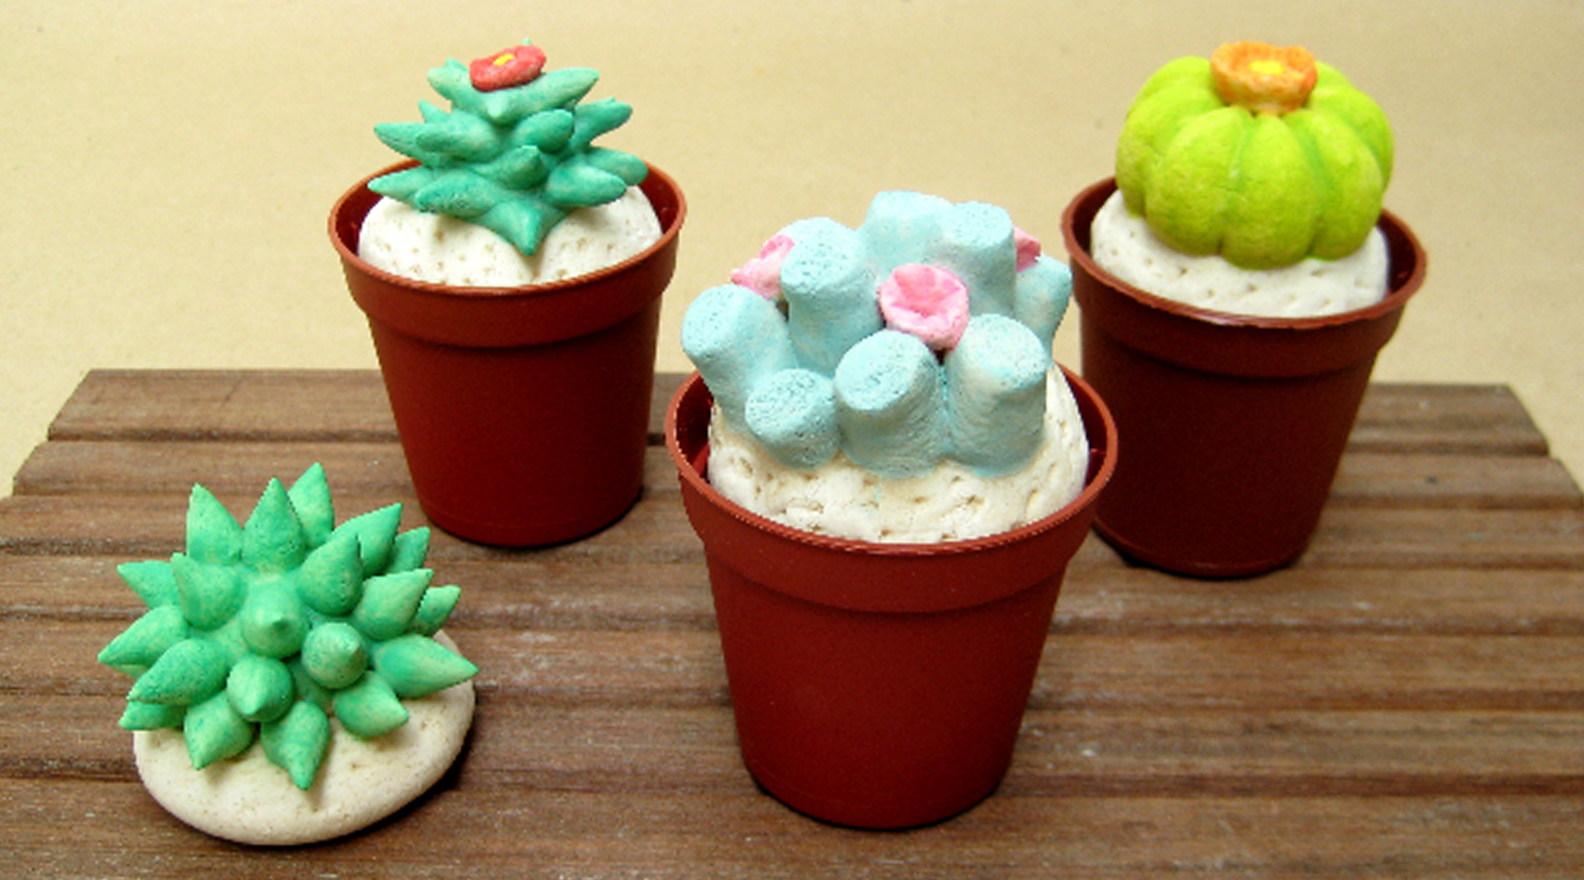 Les cactus de pâte à sel - Activités manuelles pour la fête des